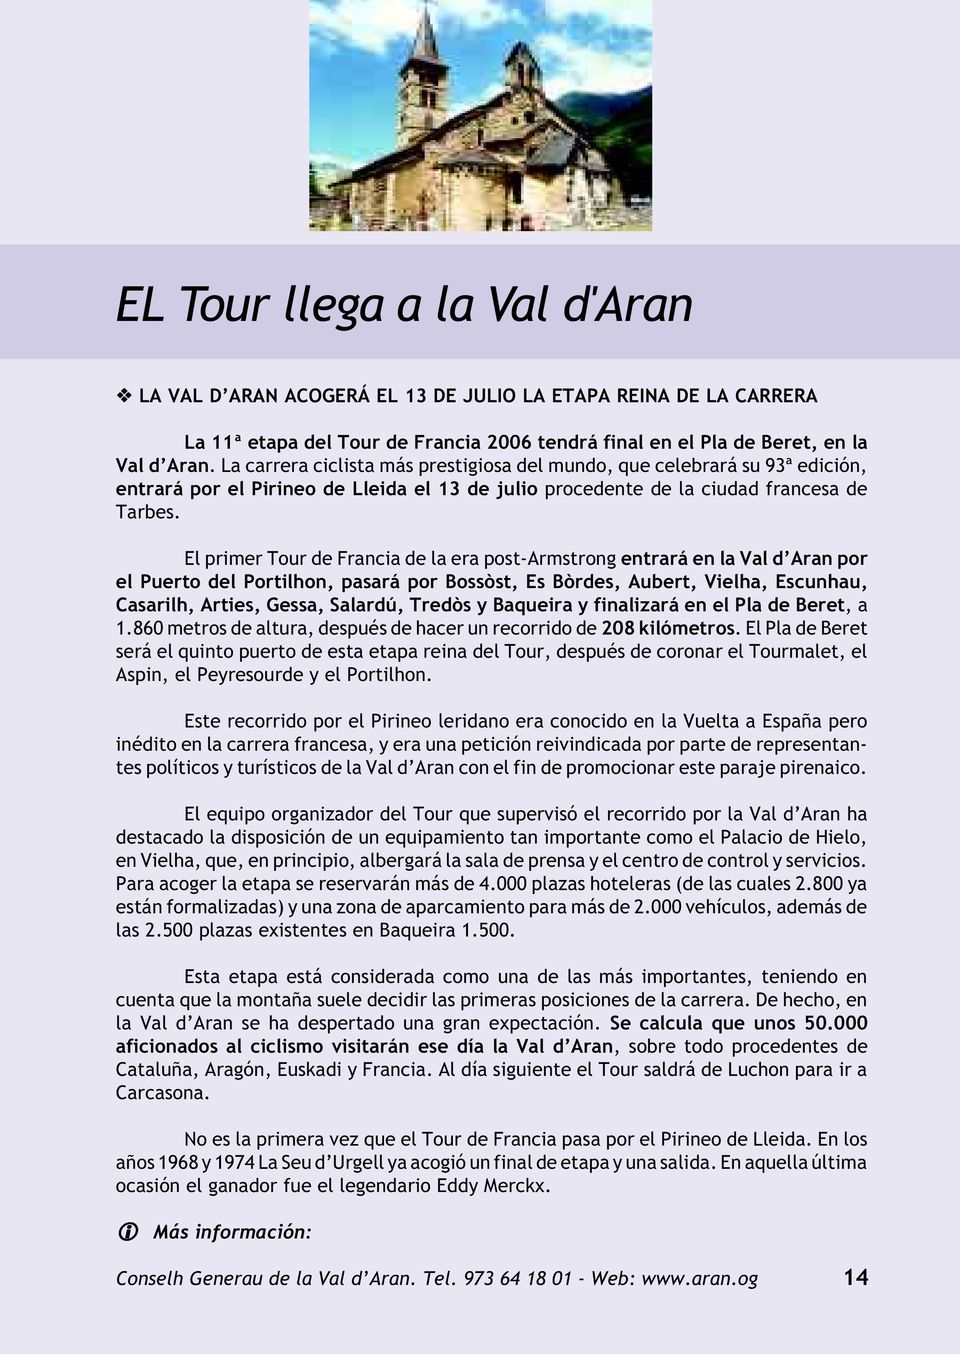 El primer Tour de Francia de la era post-armstrong entrará en la Val d Aran por el Puerto del Portilhon, pasará por Bossòst, Es Bòrdes, Aubert, Vielha, Escunhau, Casarilh, Arties, Gessa, Salardú,